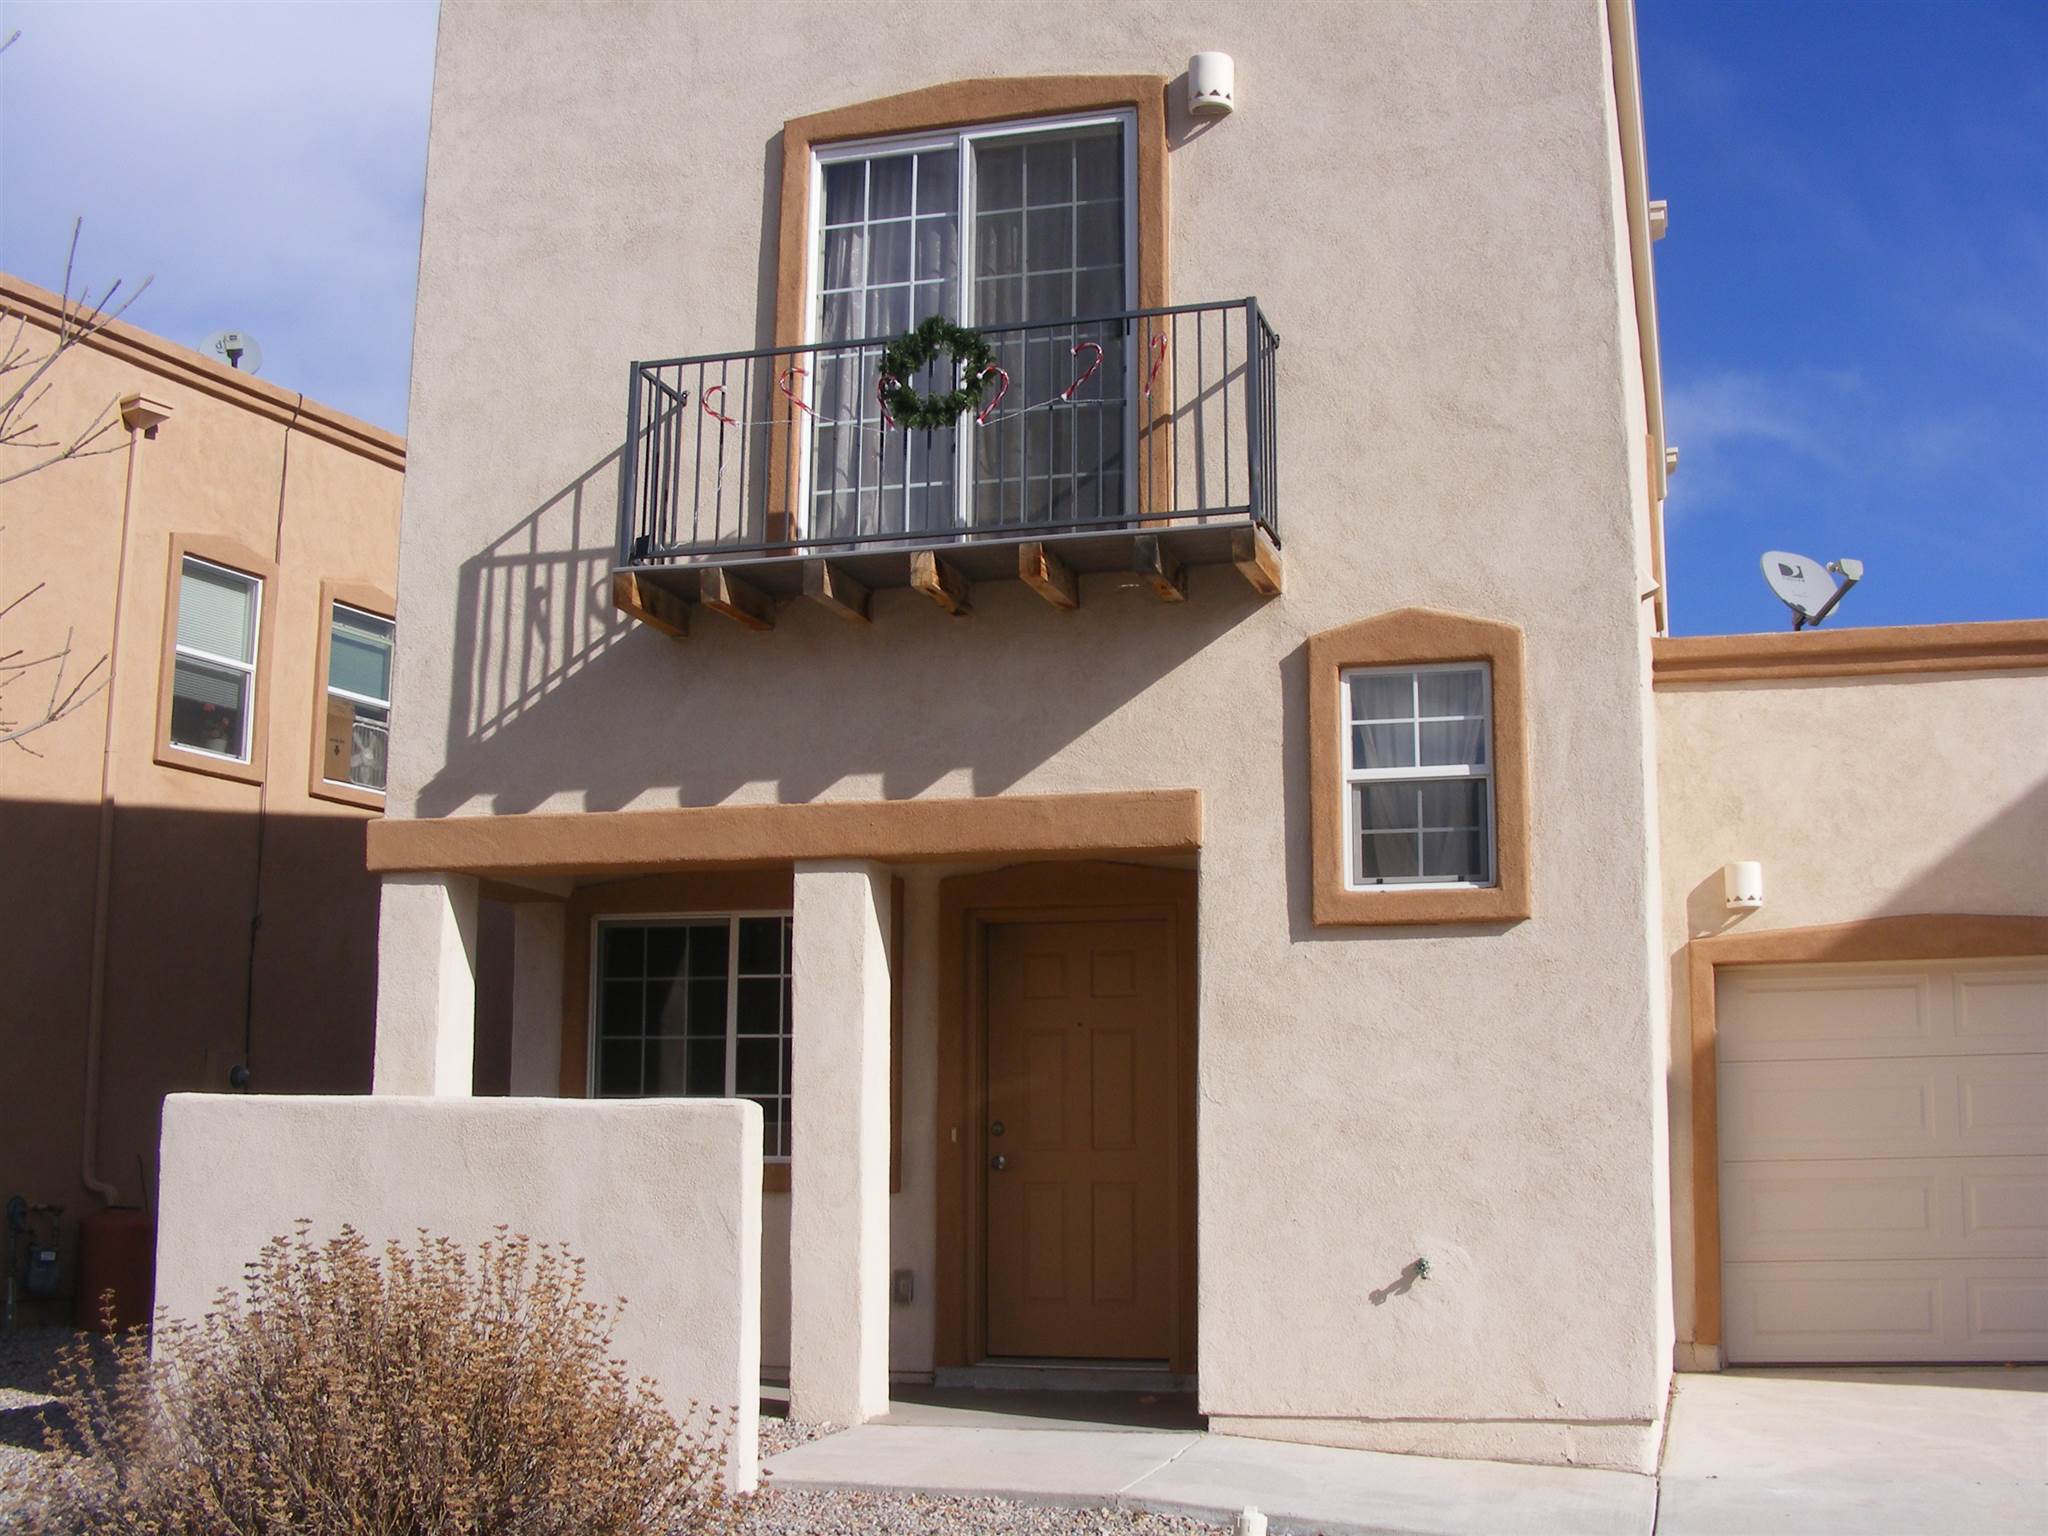 61 Carson Valley Way, Santa Fe, New Mexico 87508, 2 Bedrooms Bedrooms, ,2 BathroomsBathrooms,Residential,For Sale,61 Carson Valley Way,202233315